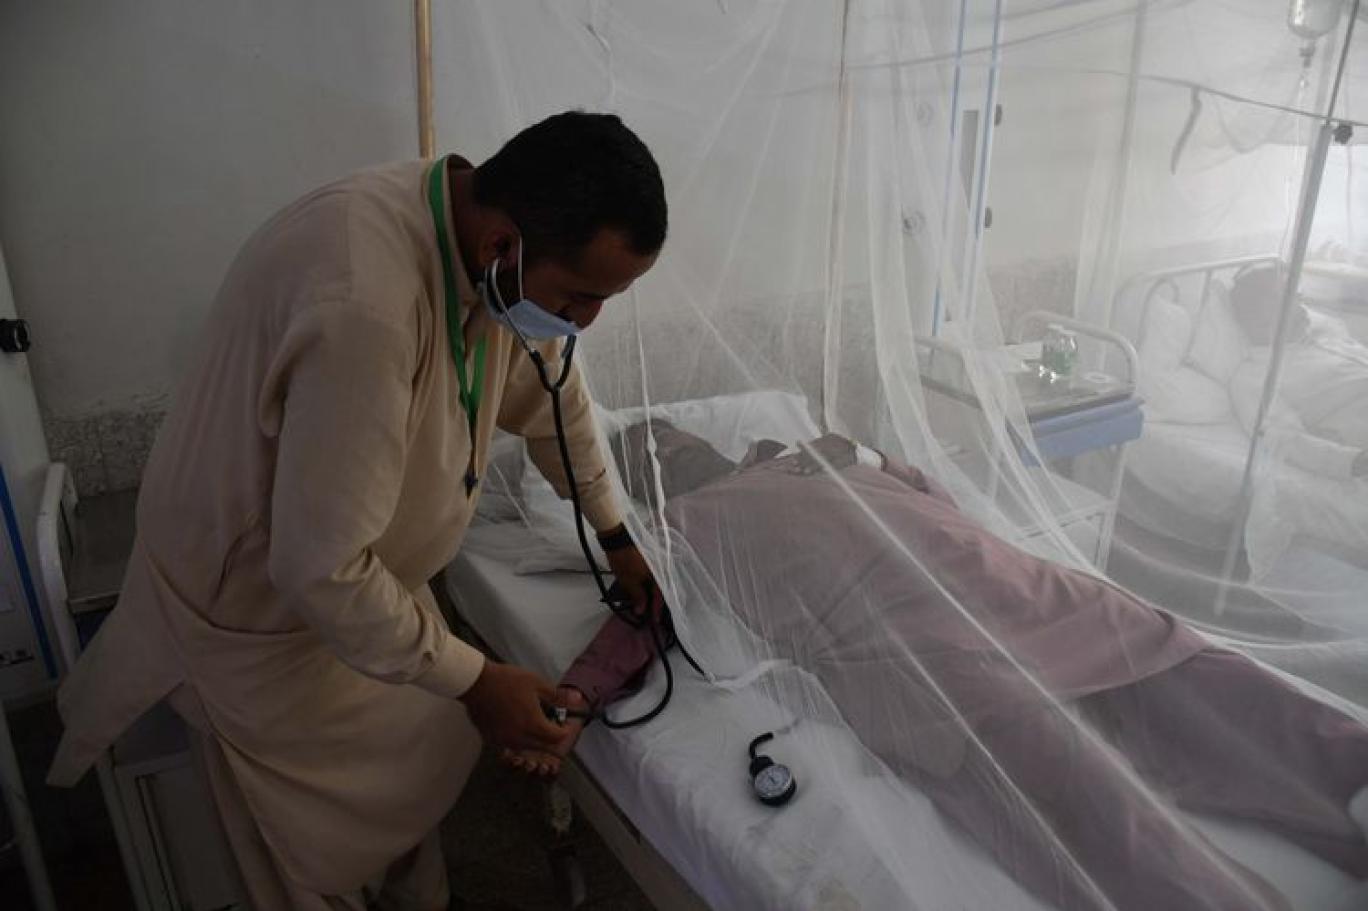 Pakistan'da "gizemli" hastalık sebebiyle 18 kişi öldü | Independent Türkçe